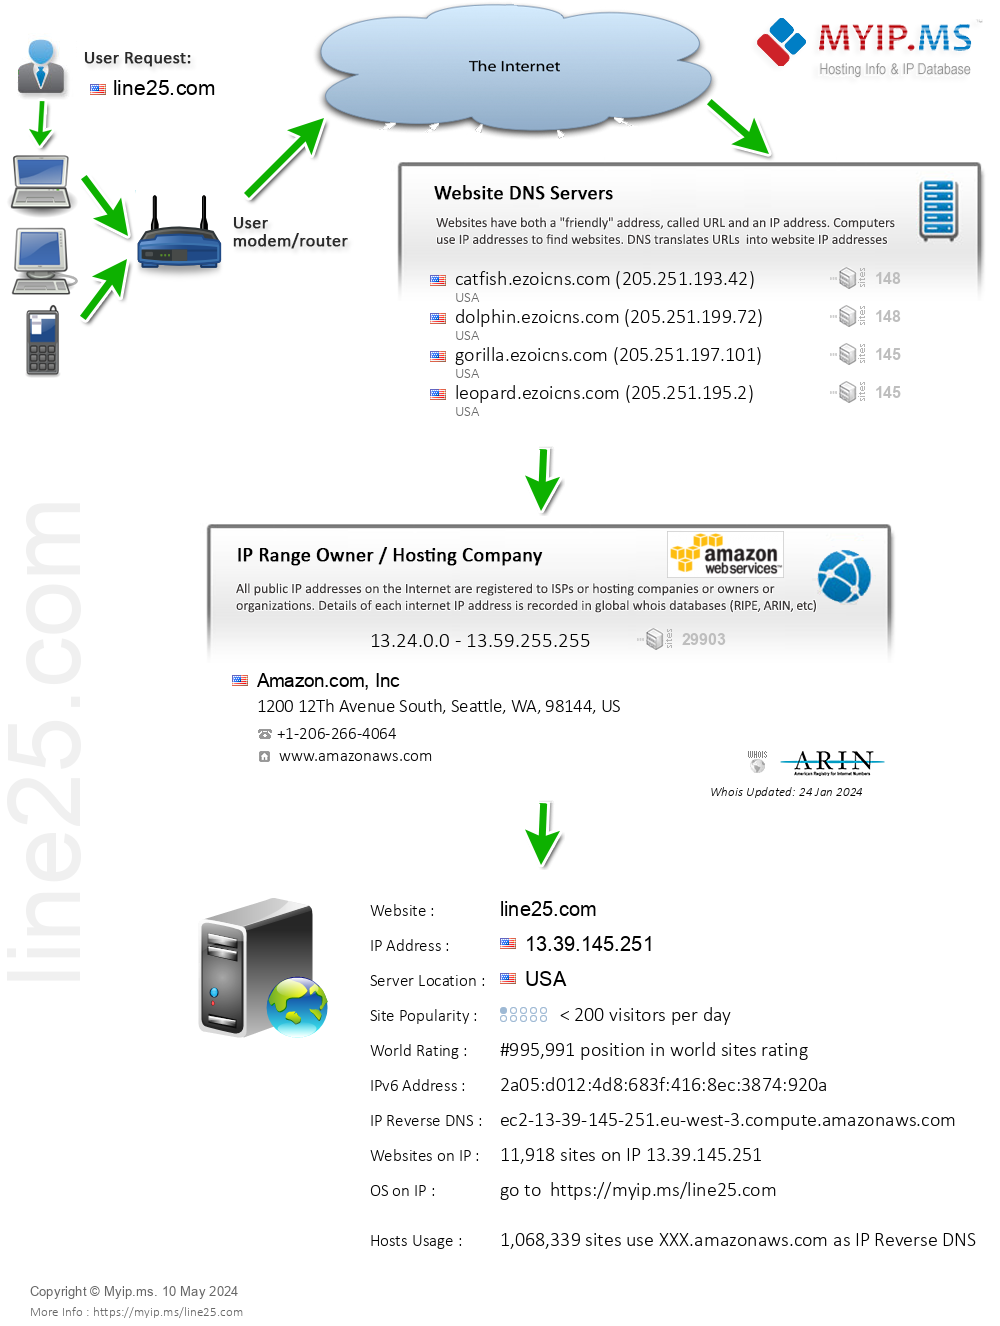 Line25.com - Website Hosting Visual IP Diagram